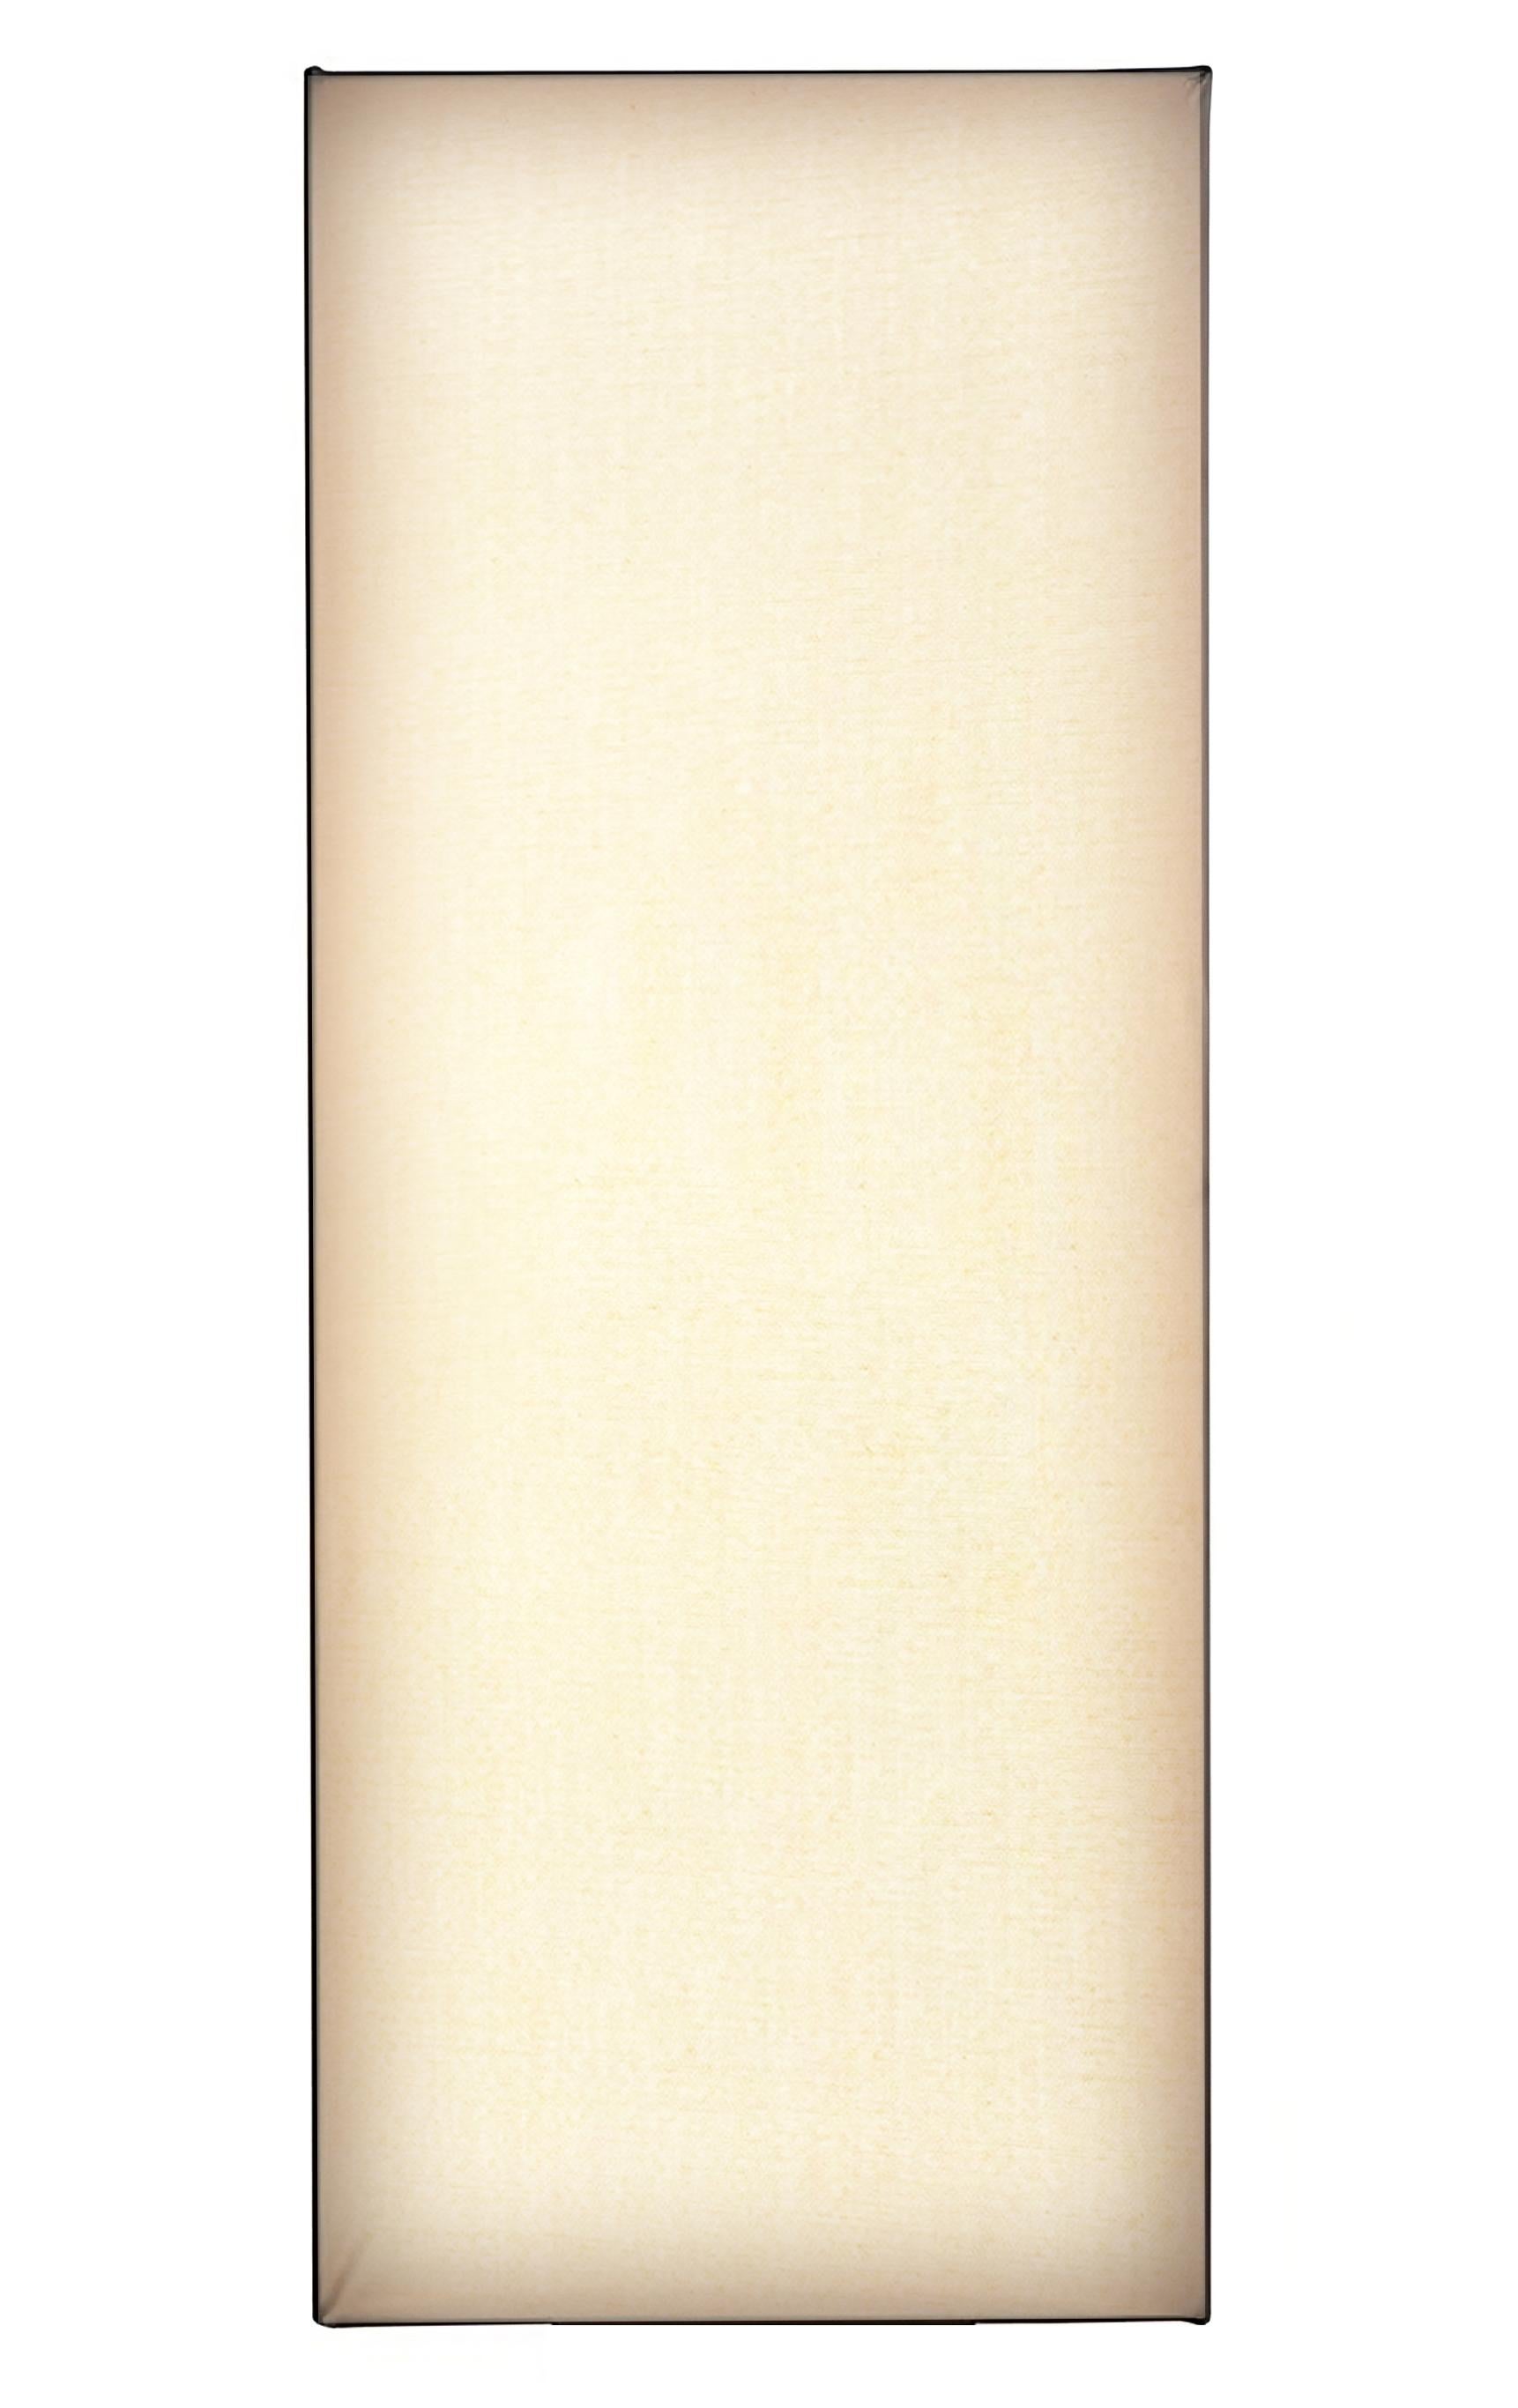 La lampe Accademia, conçue par Cini Boeri en 1978, est une version de la populaire lampe de table créée pour Artemide. Cette lampe est un exemple impressionnant de l'approche minimaliste de Boeri en matière de design, avec son esthétique élégante et